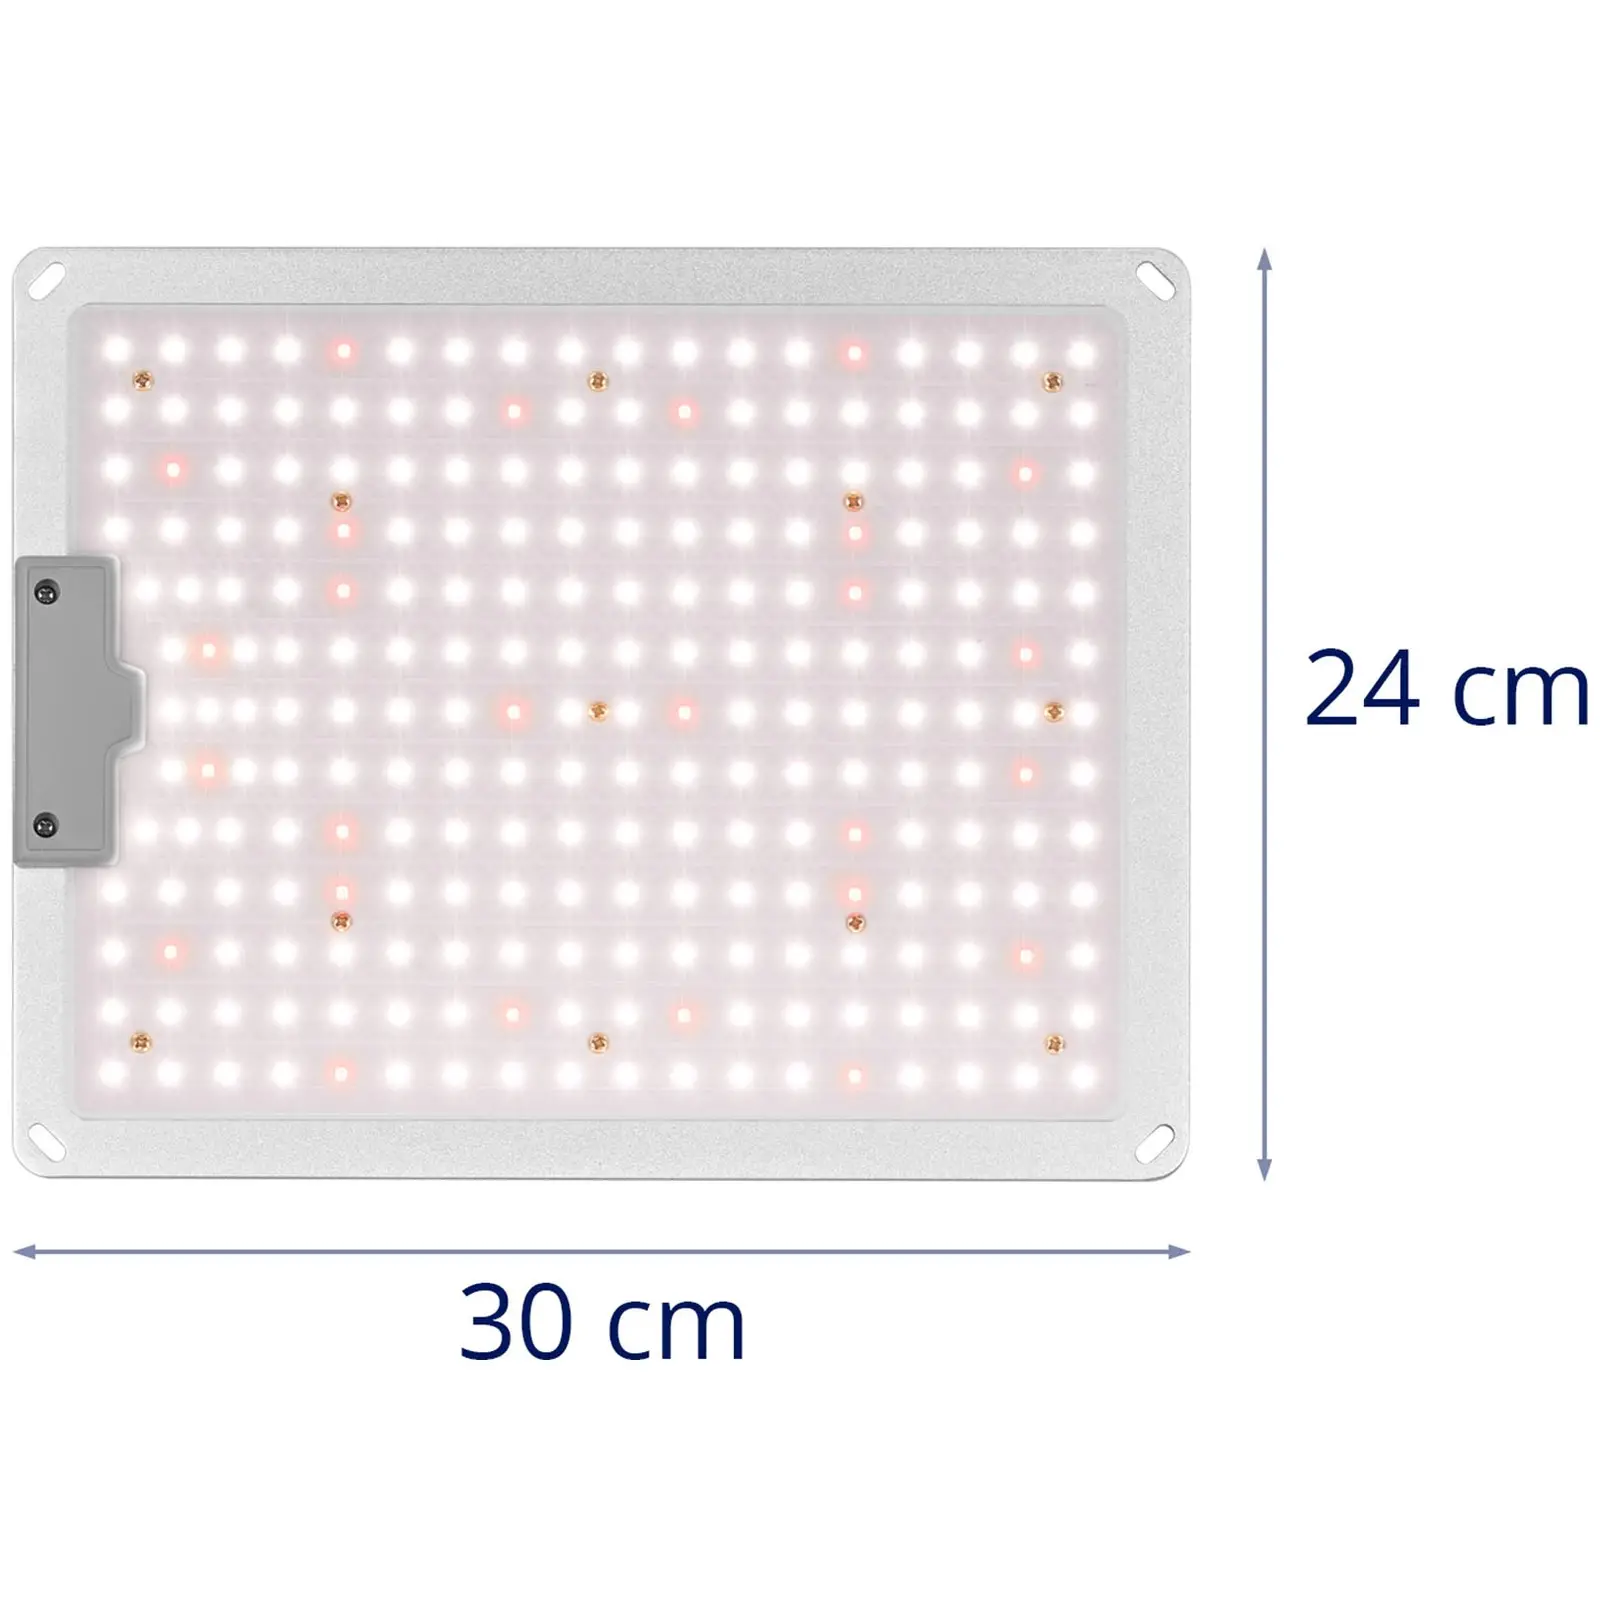 Odlingslampa - Fullspektrum - 110 W - 234 LED - 10 000 Lumen